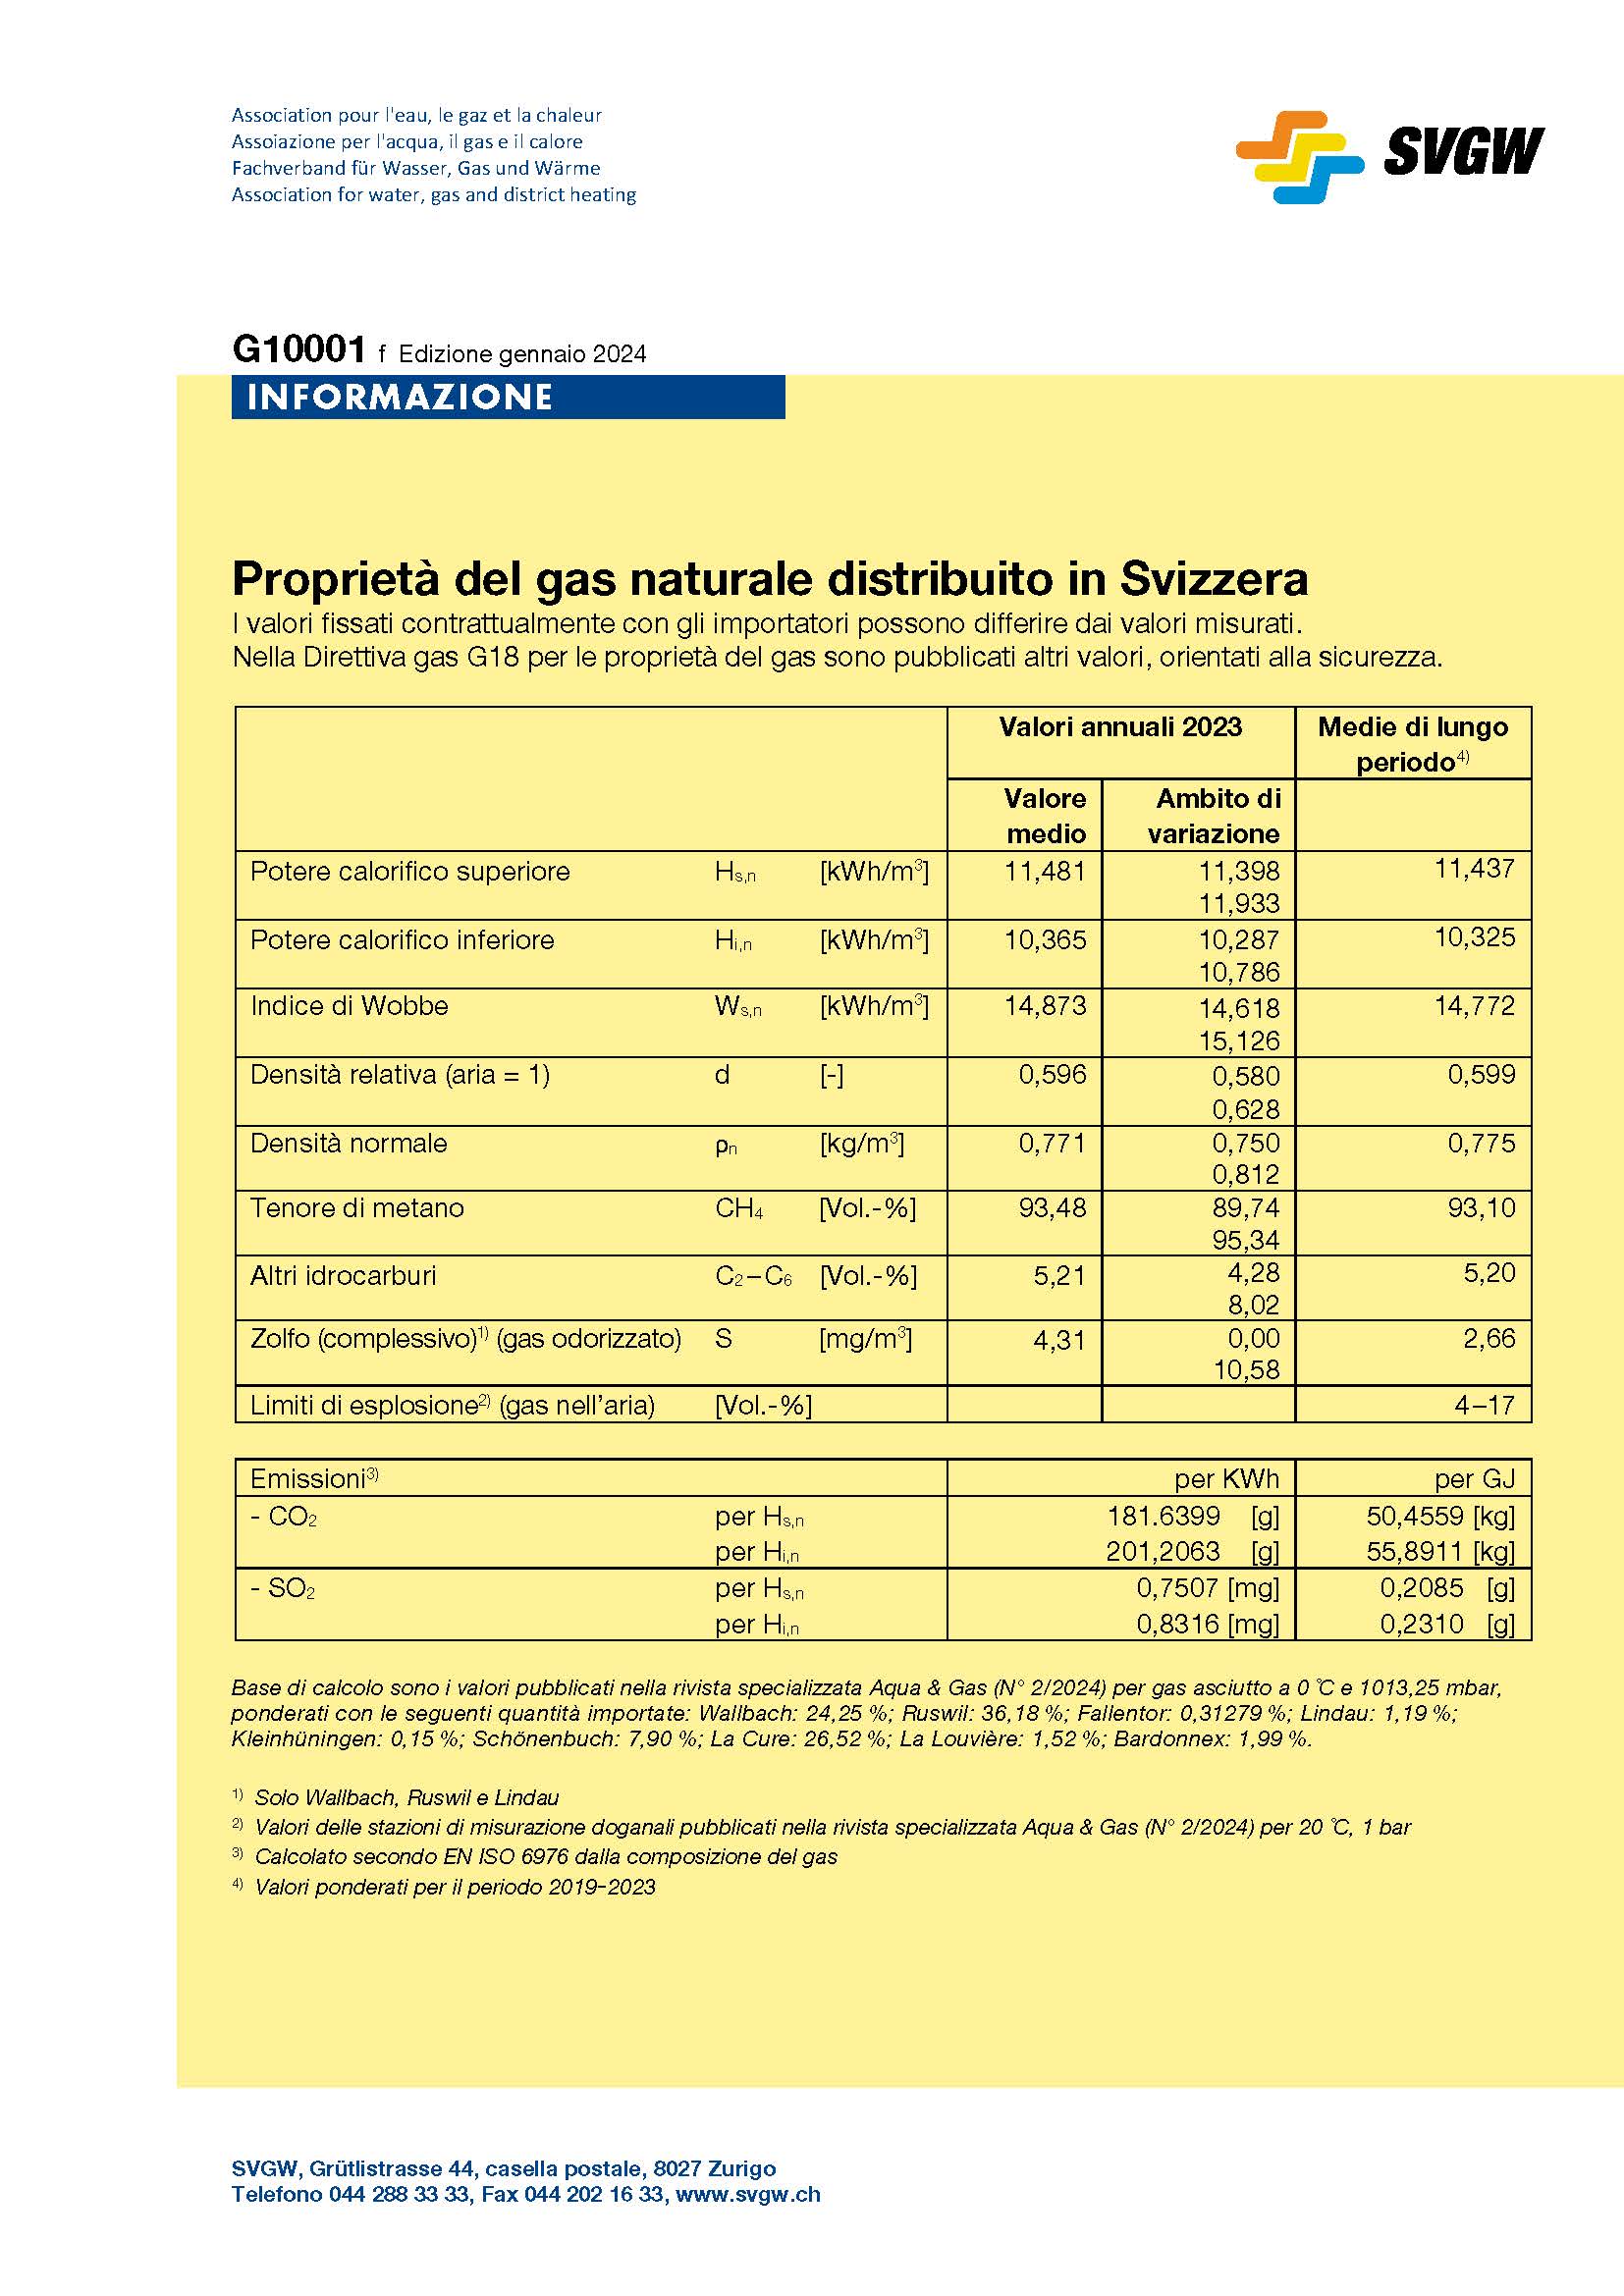 G10001 i Proprietà del gas naturale distribuito in Svizzera